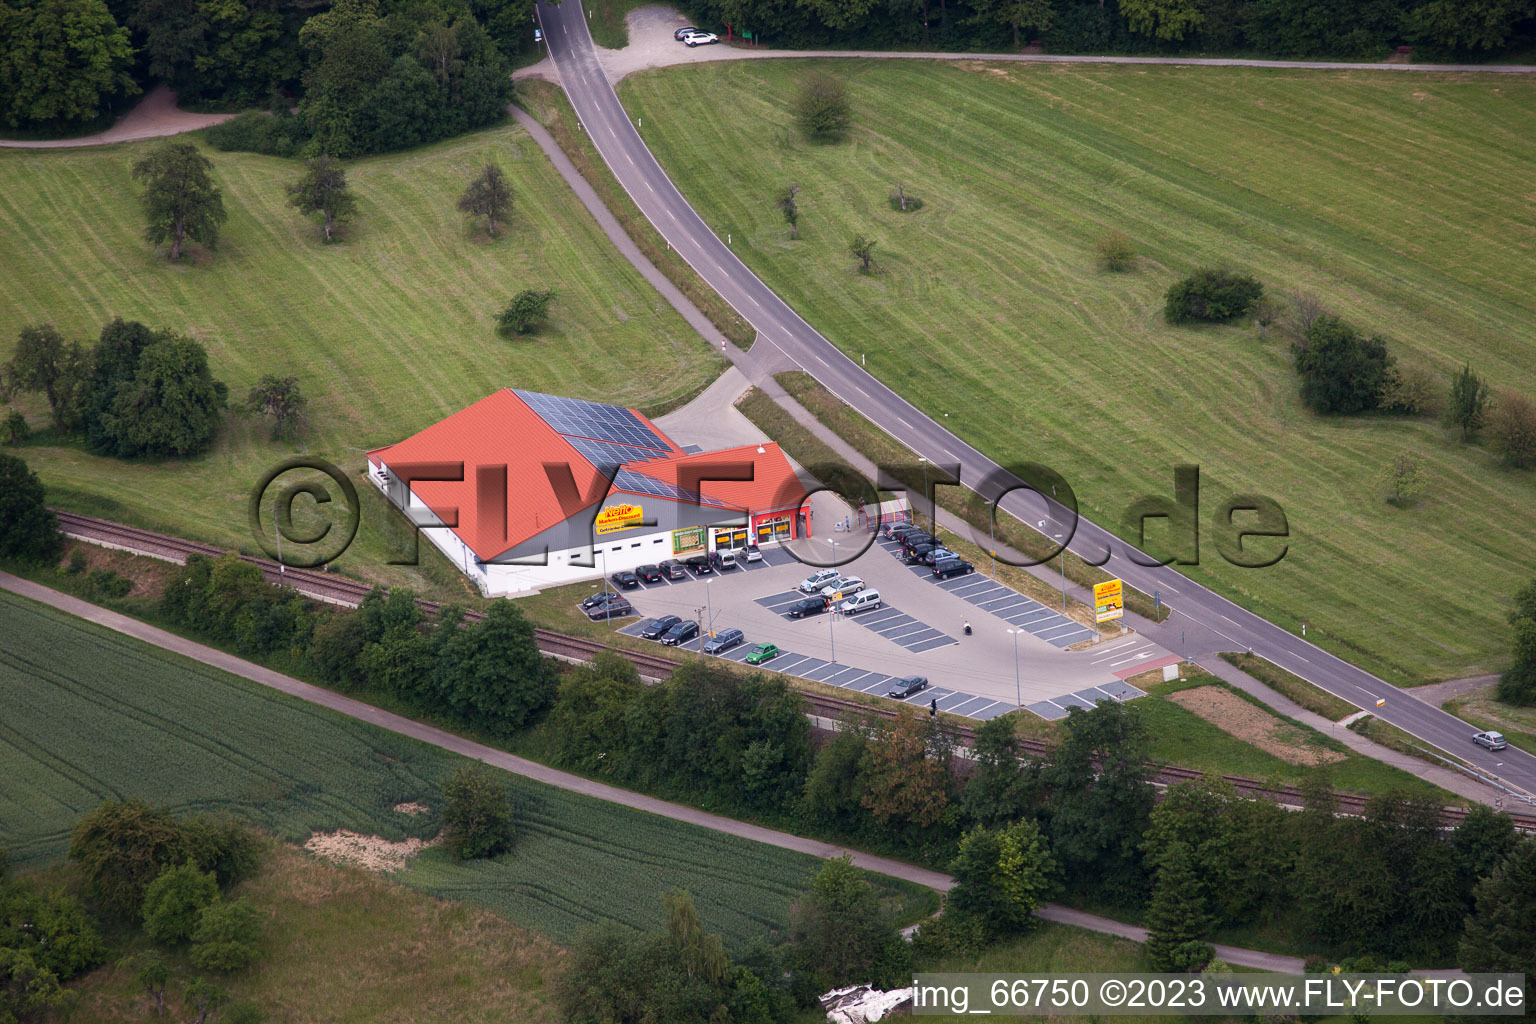 Vue aérienne de Filet à le quartier Spielberg in Karlsbad dans le département Bade-Wurtemberg, Allemagne